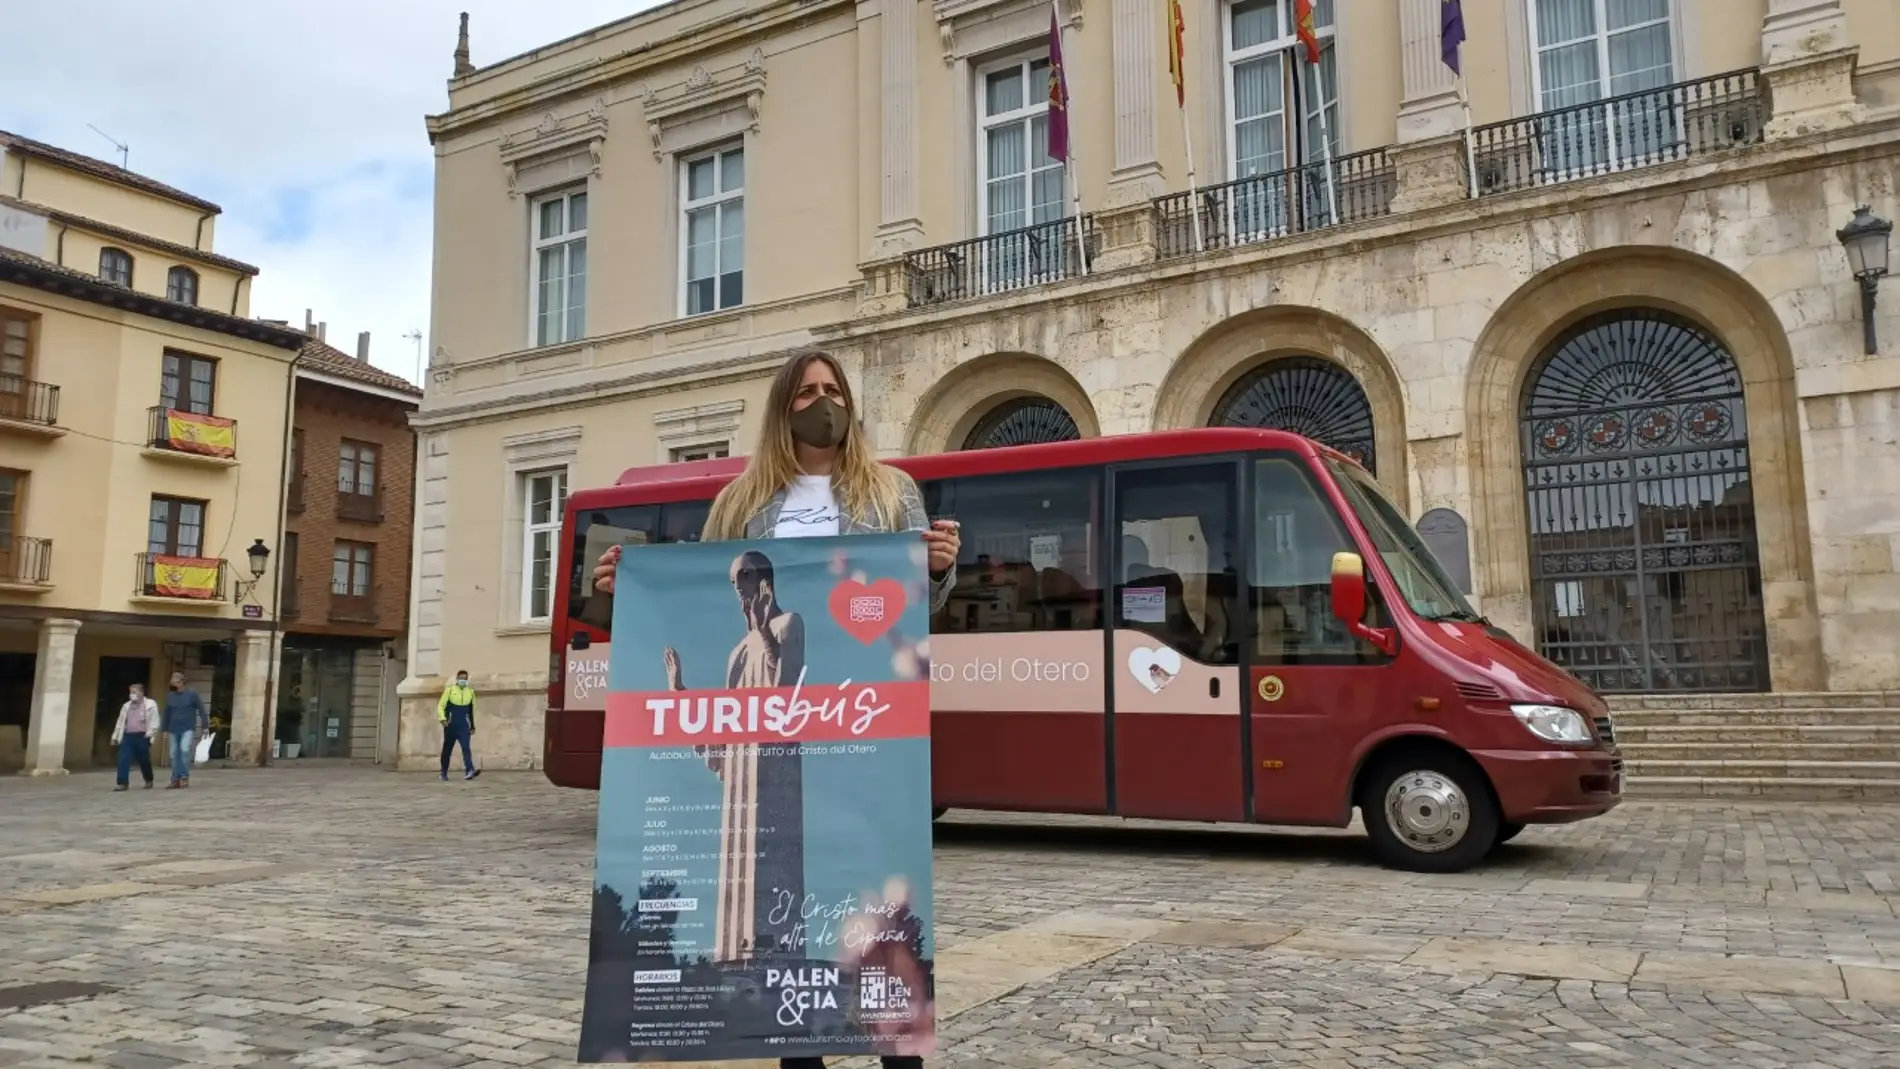 Palencia dispondrá de un autobús turístico gratuito durante los fines de semana para facilitar las visitas al Cristo